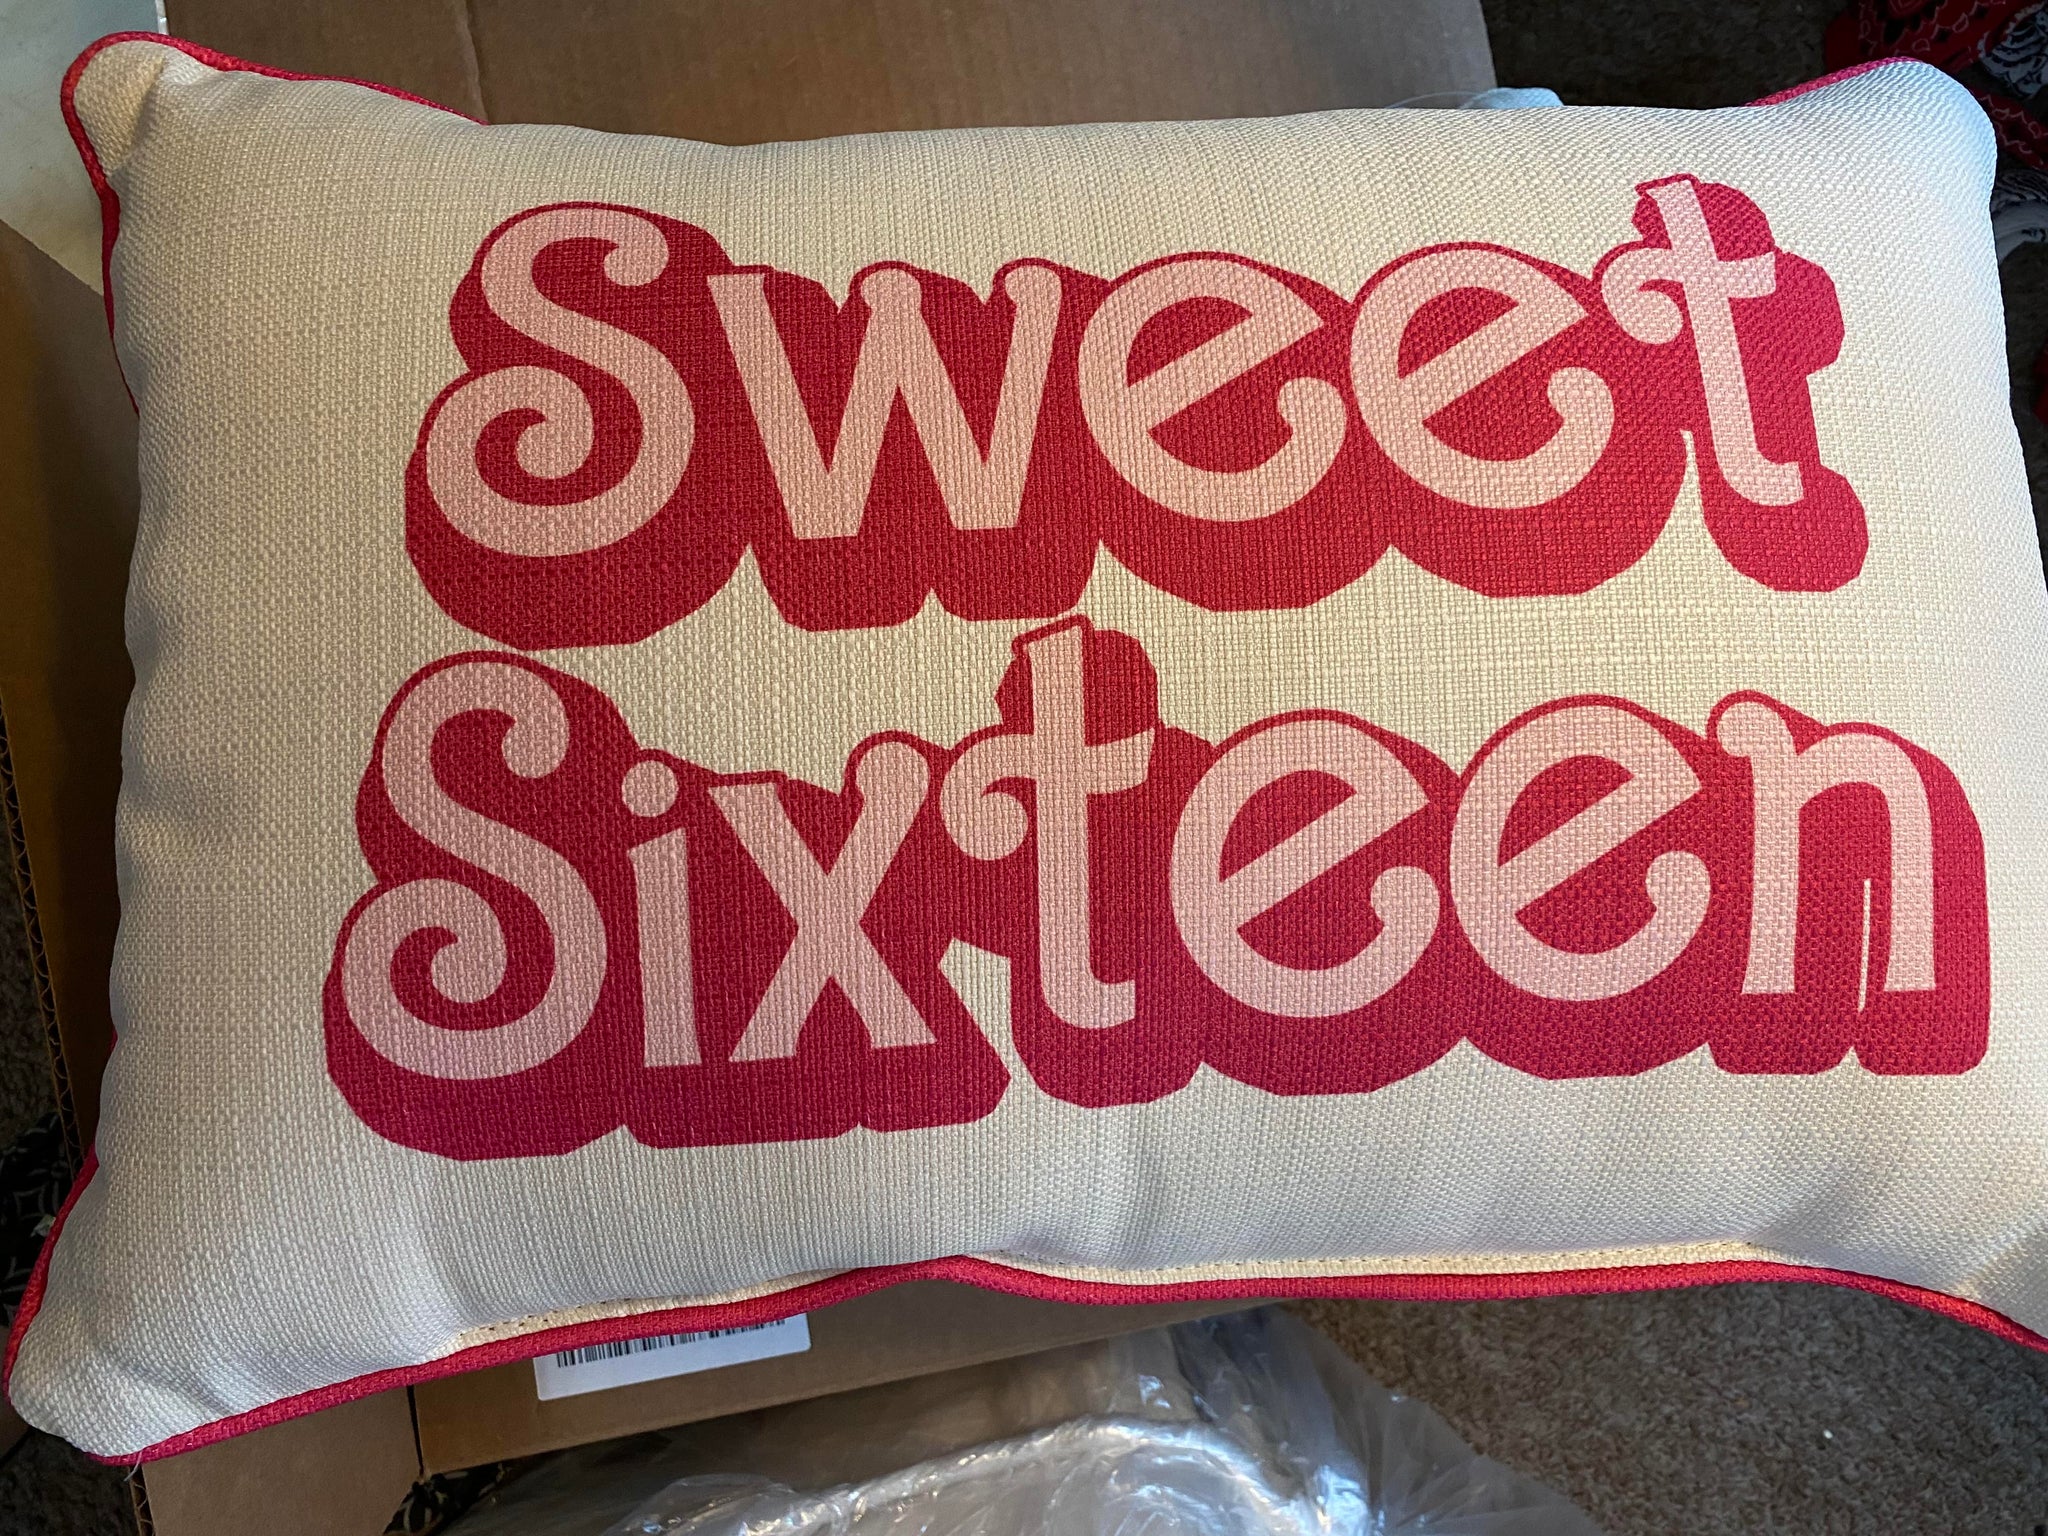 Sweet Sixteen "Barbie" Pillow